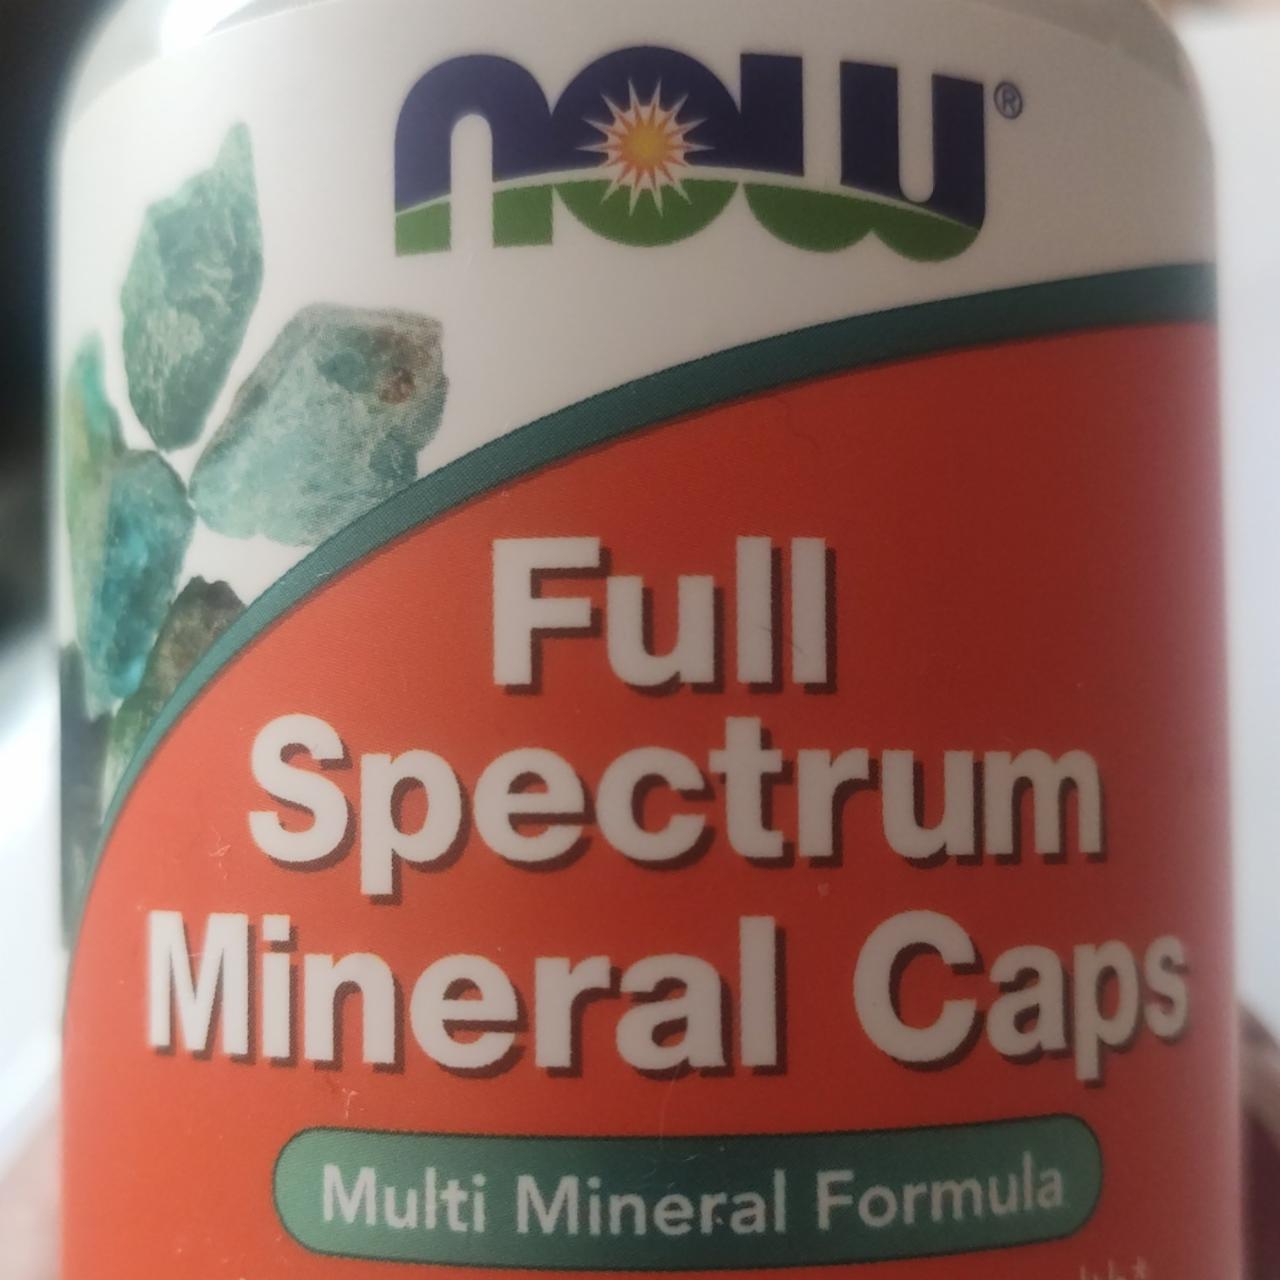 Fotografie - Full Spectrum Mineral Caps now